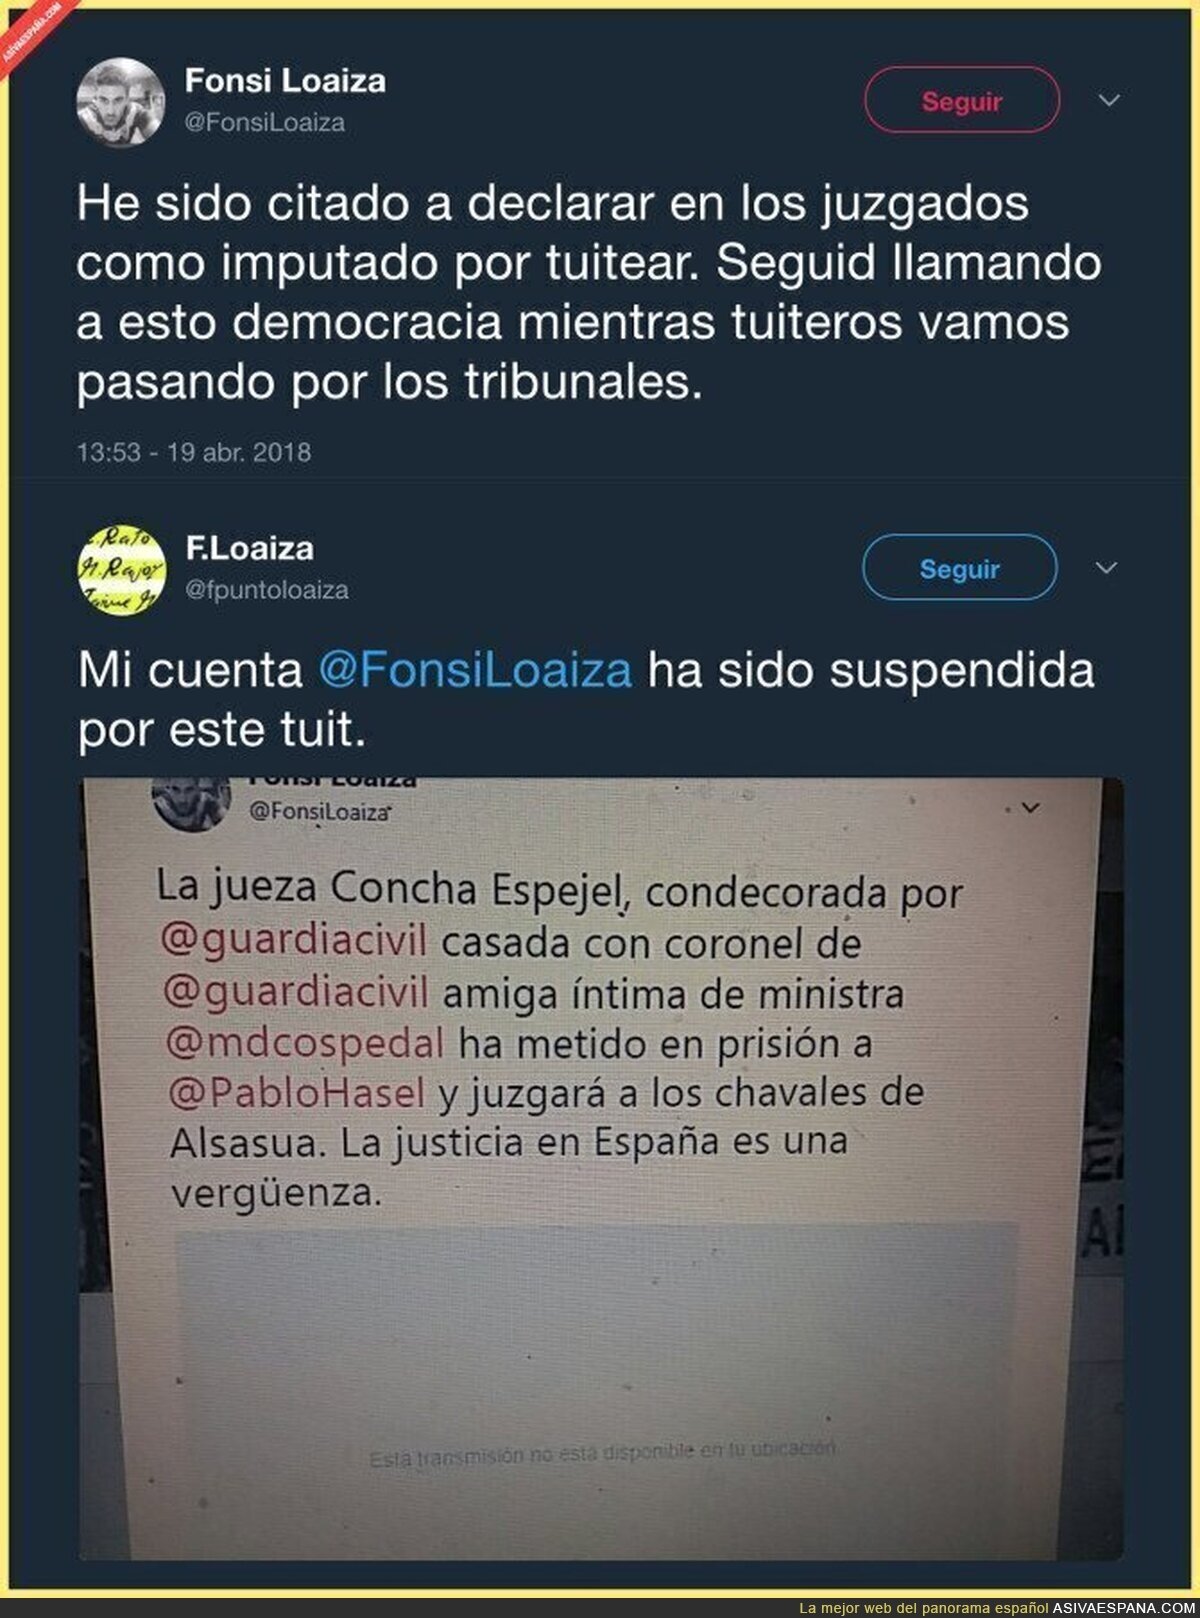 Han citado a declarar a Fonsi Loaiza por tuitear este mensaje sobre la jueza Concha Espejel